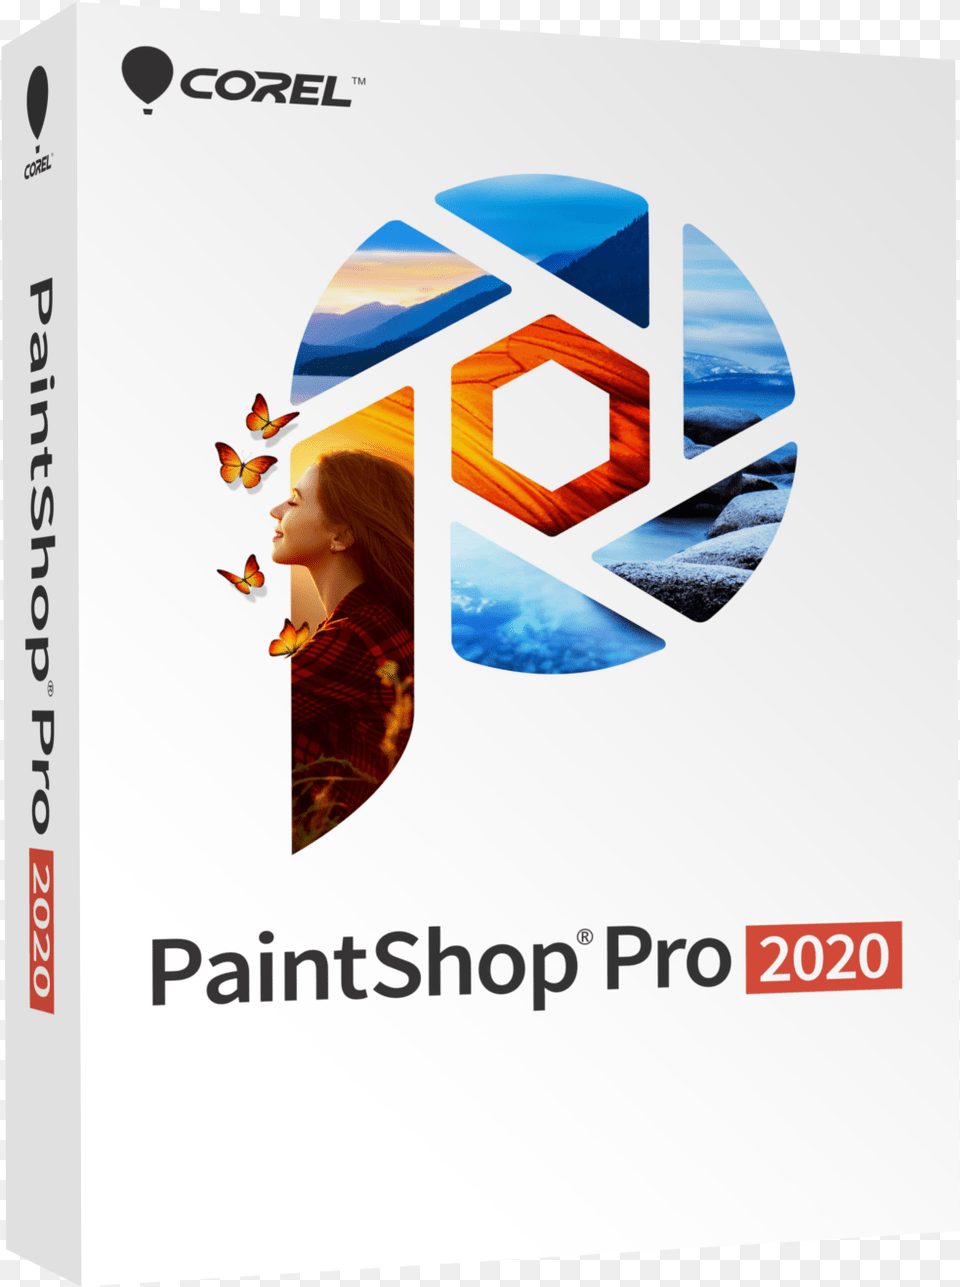 Product Corel Paintshop Pro 2020, Adult, Female, Person, Woman Png Image